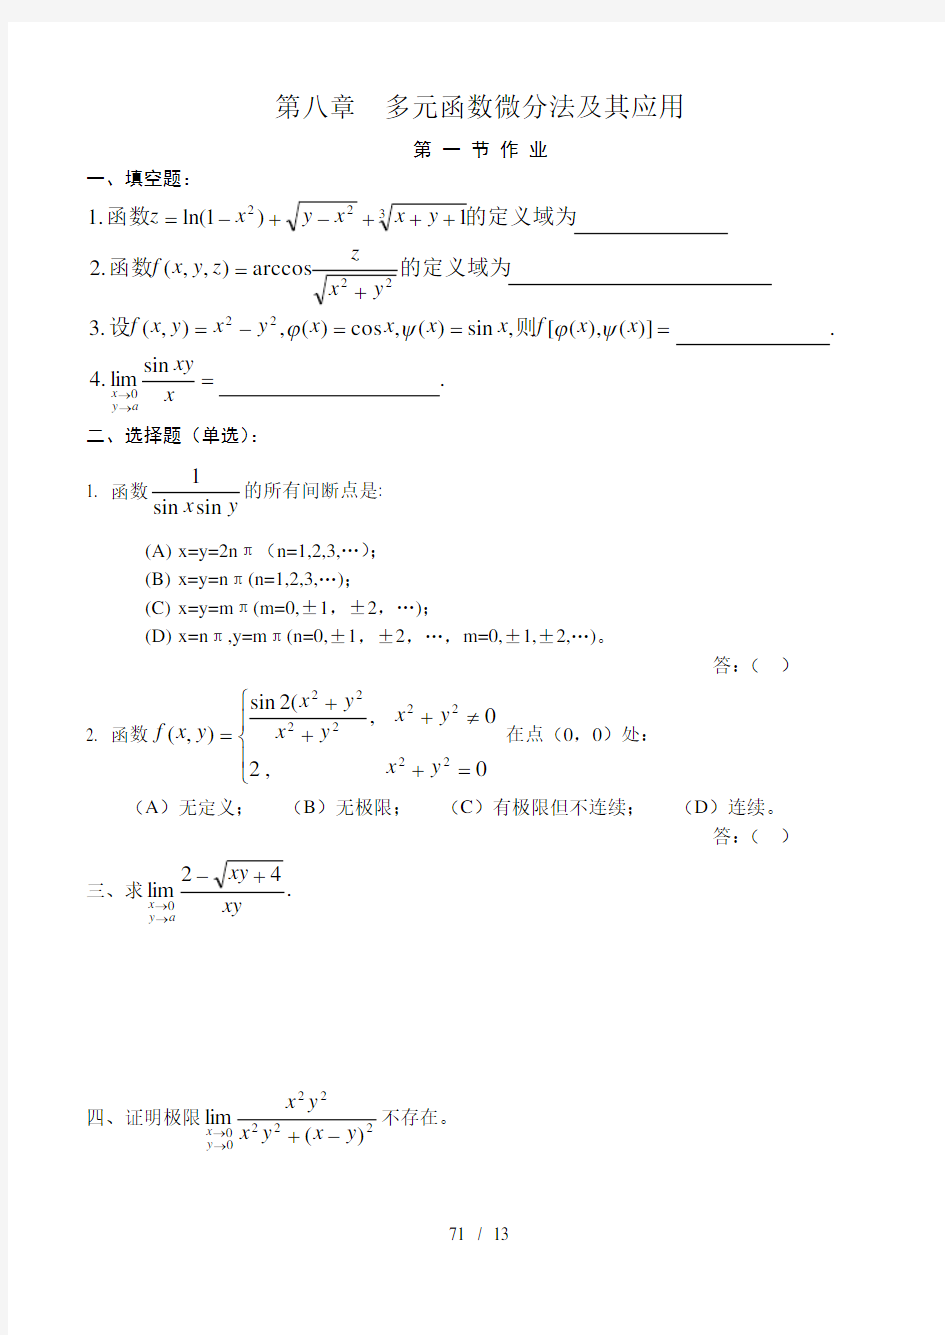 (完整版)高等数学(同济版)多元函数微分学练习题册